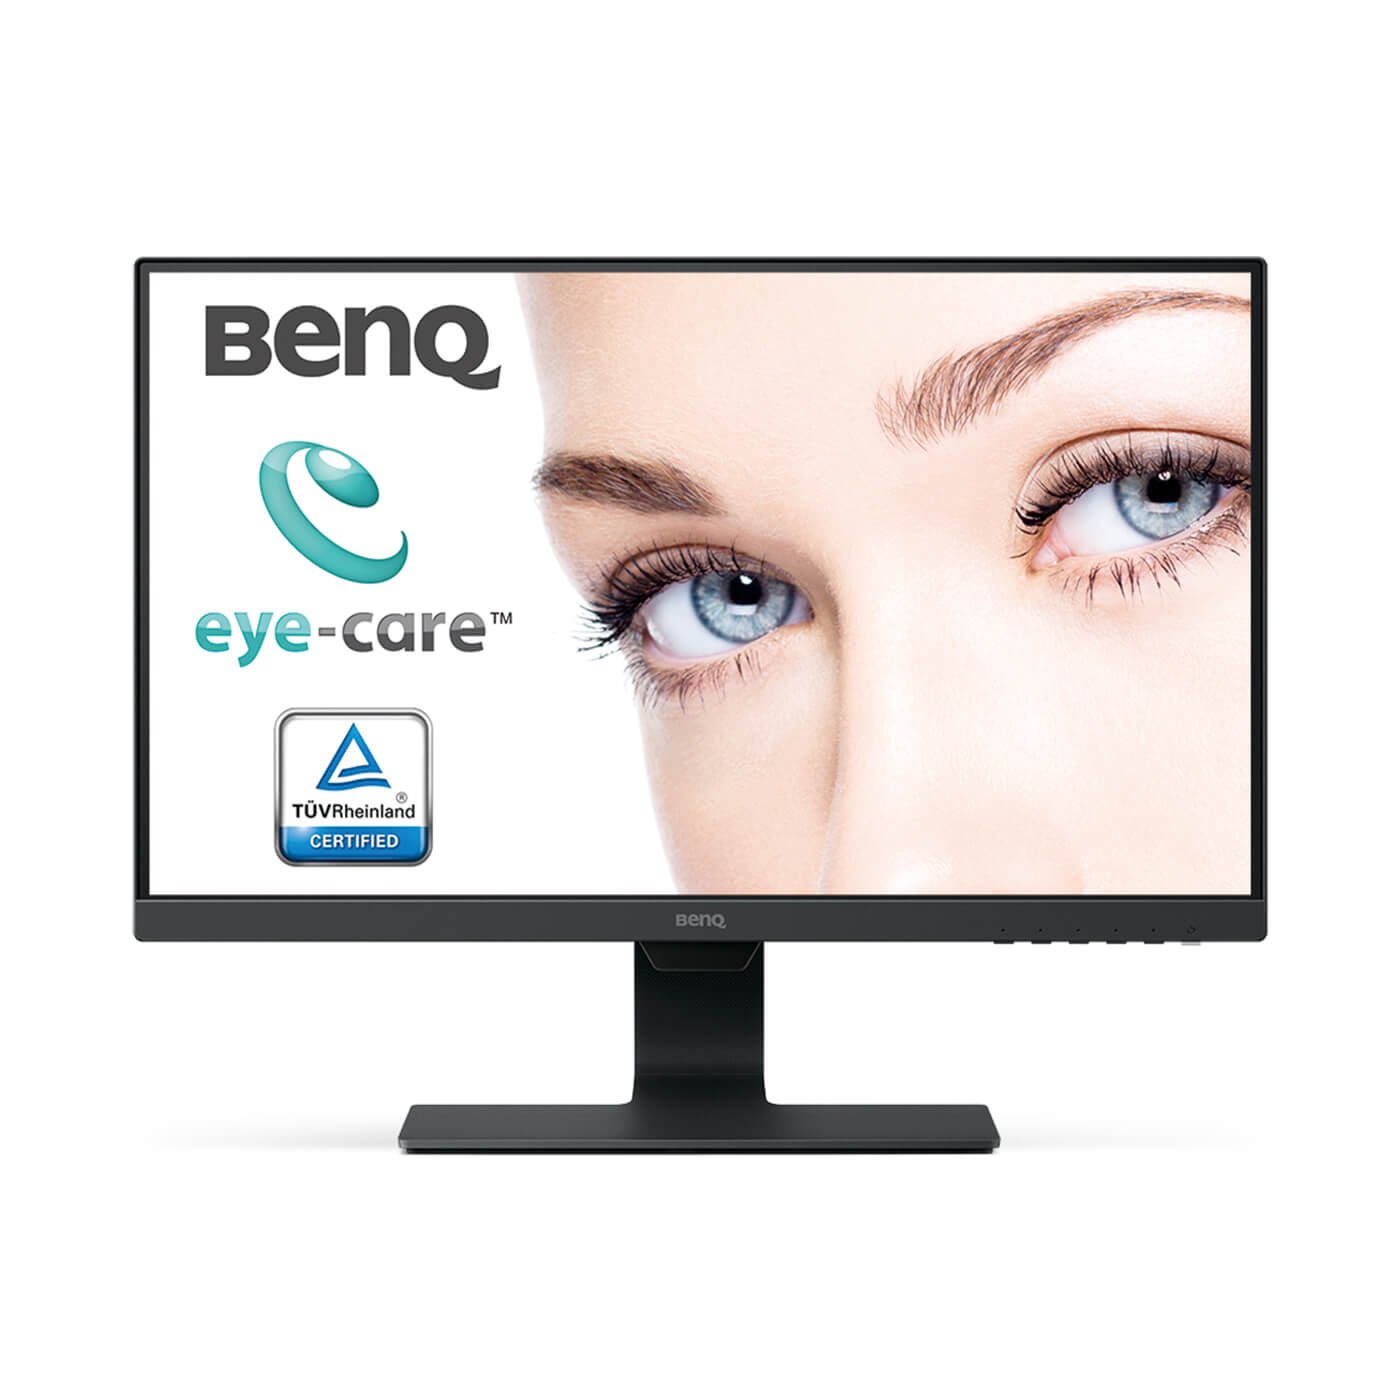 BenQ BL2480 - stijlvolle 23,8 inch Full HD-monitor met Eye CareTM-technologie